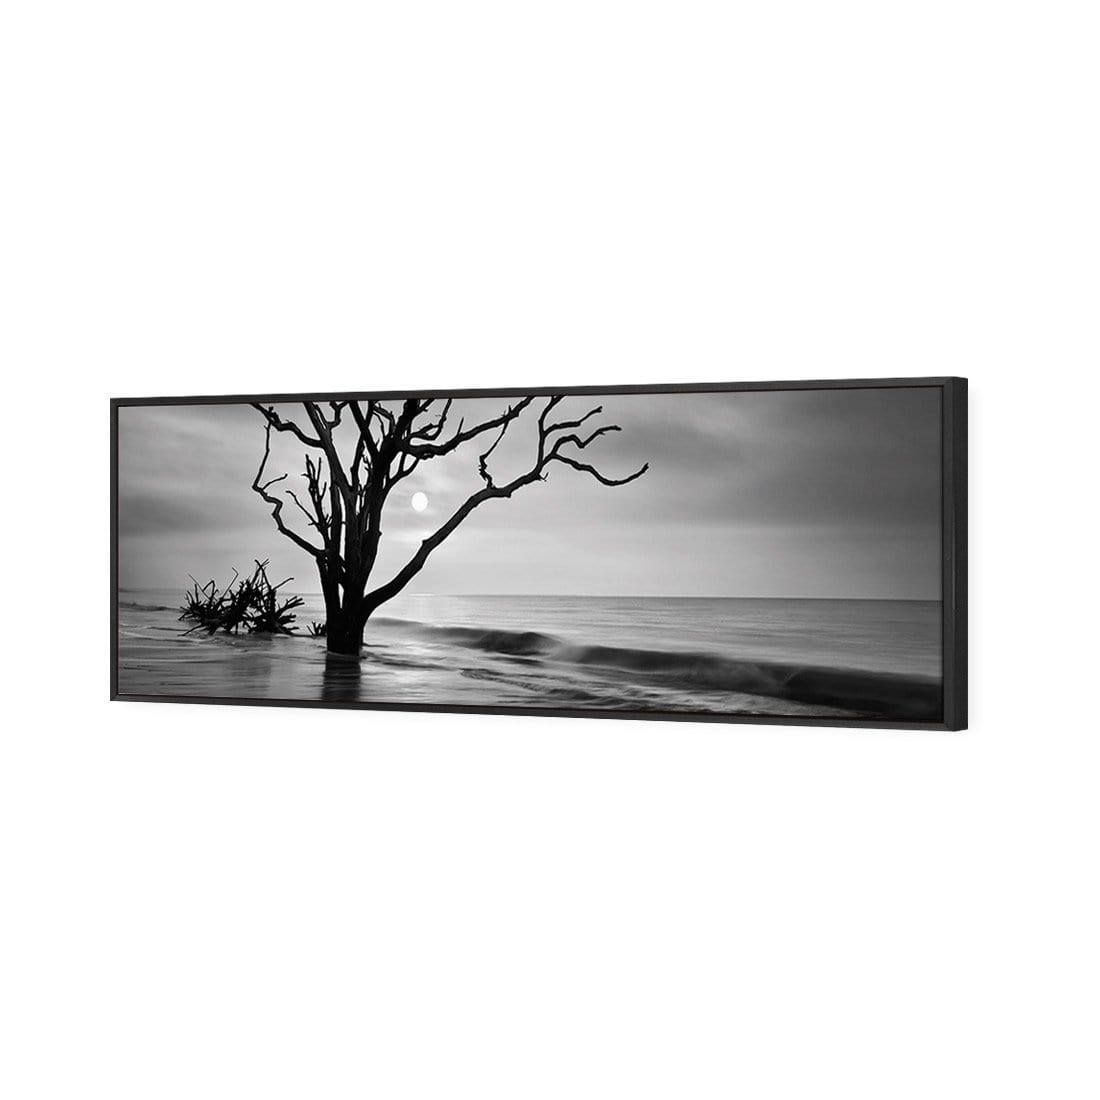 Botany Bay Sunrise, Black and White (Long) - wallart-australia - Canvas